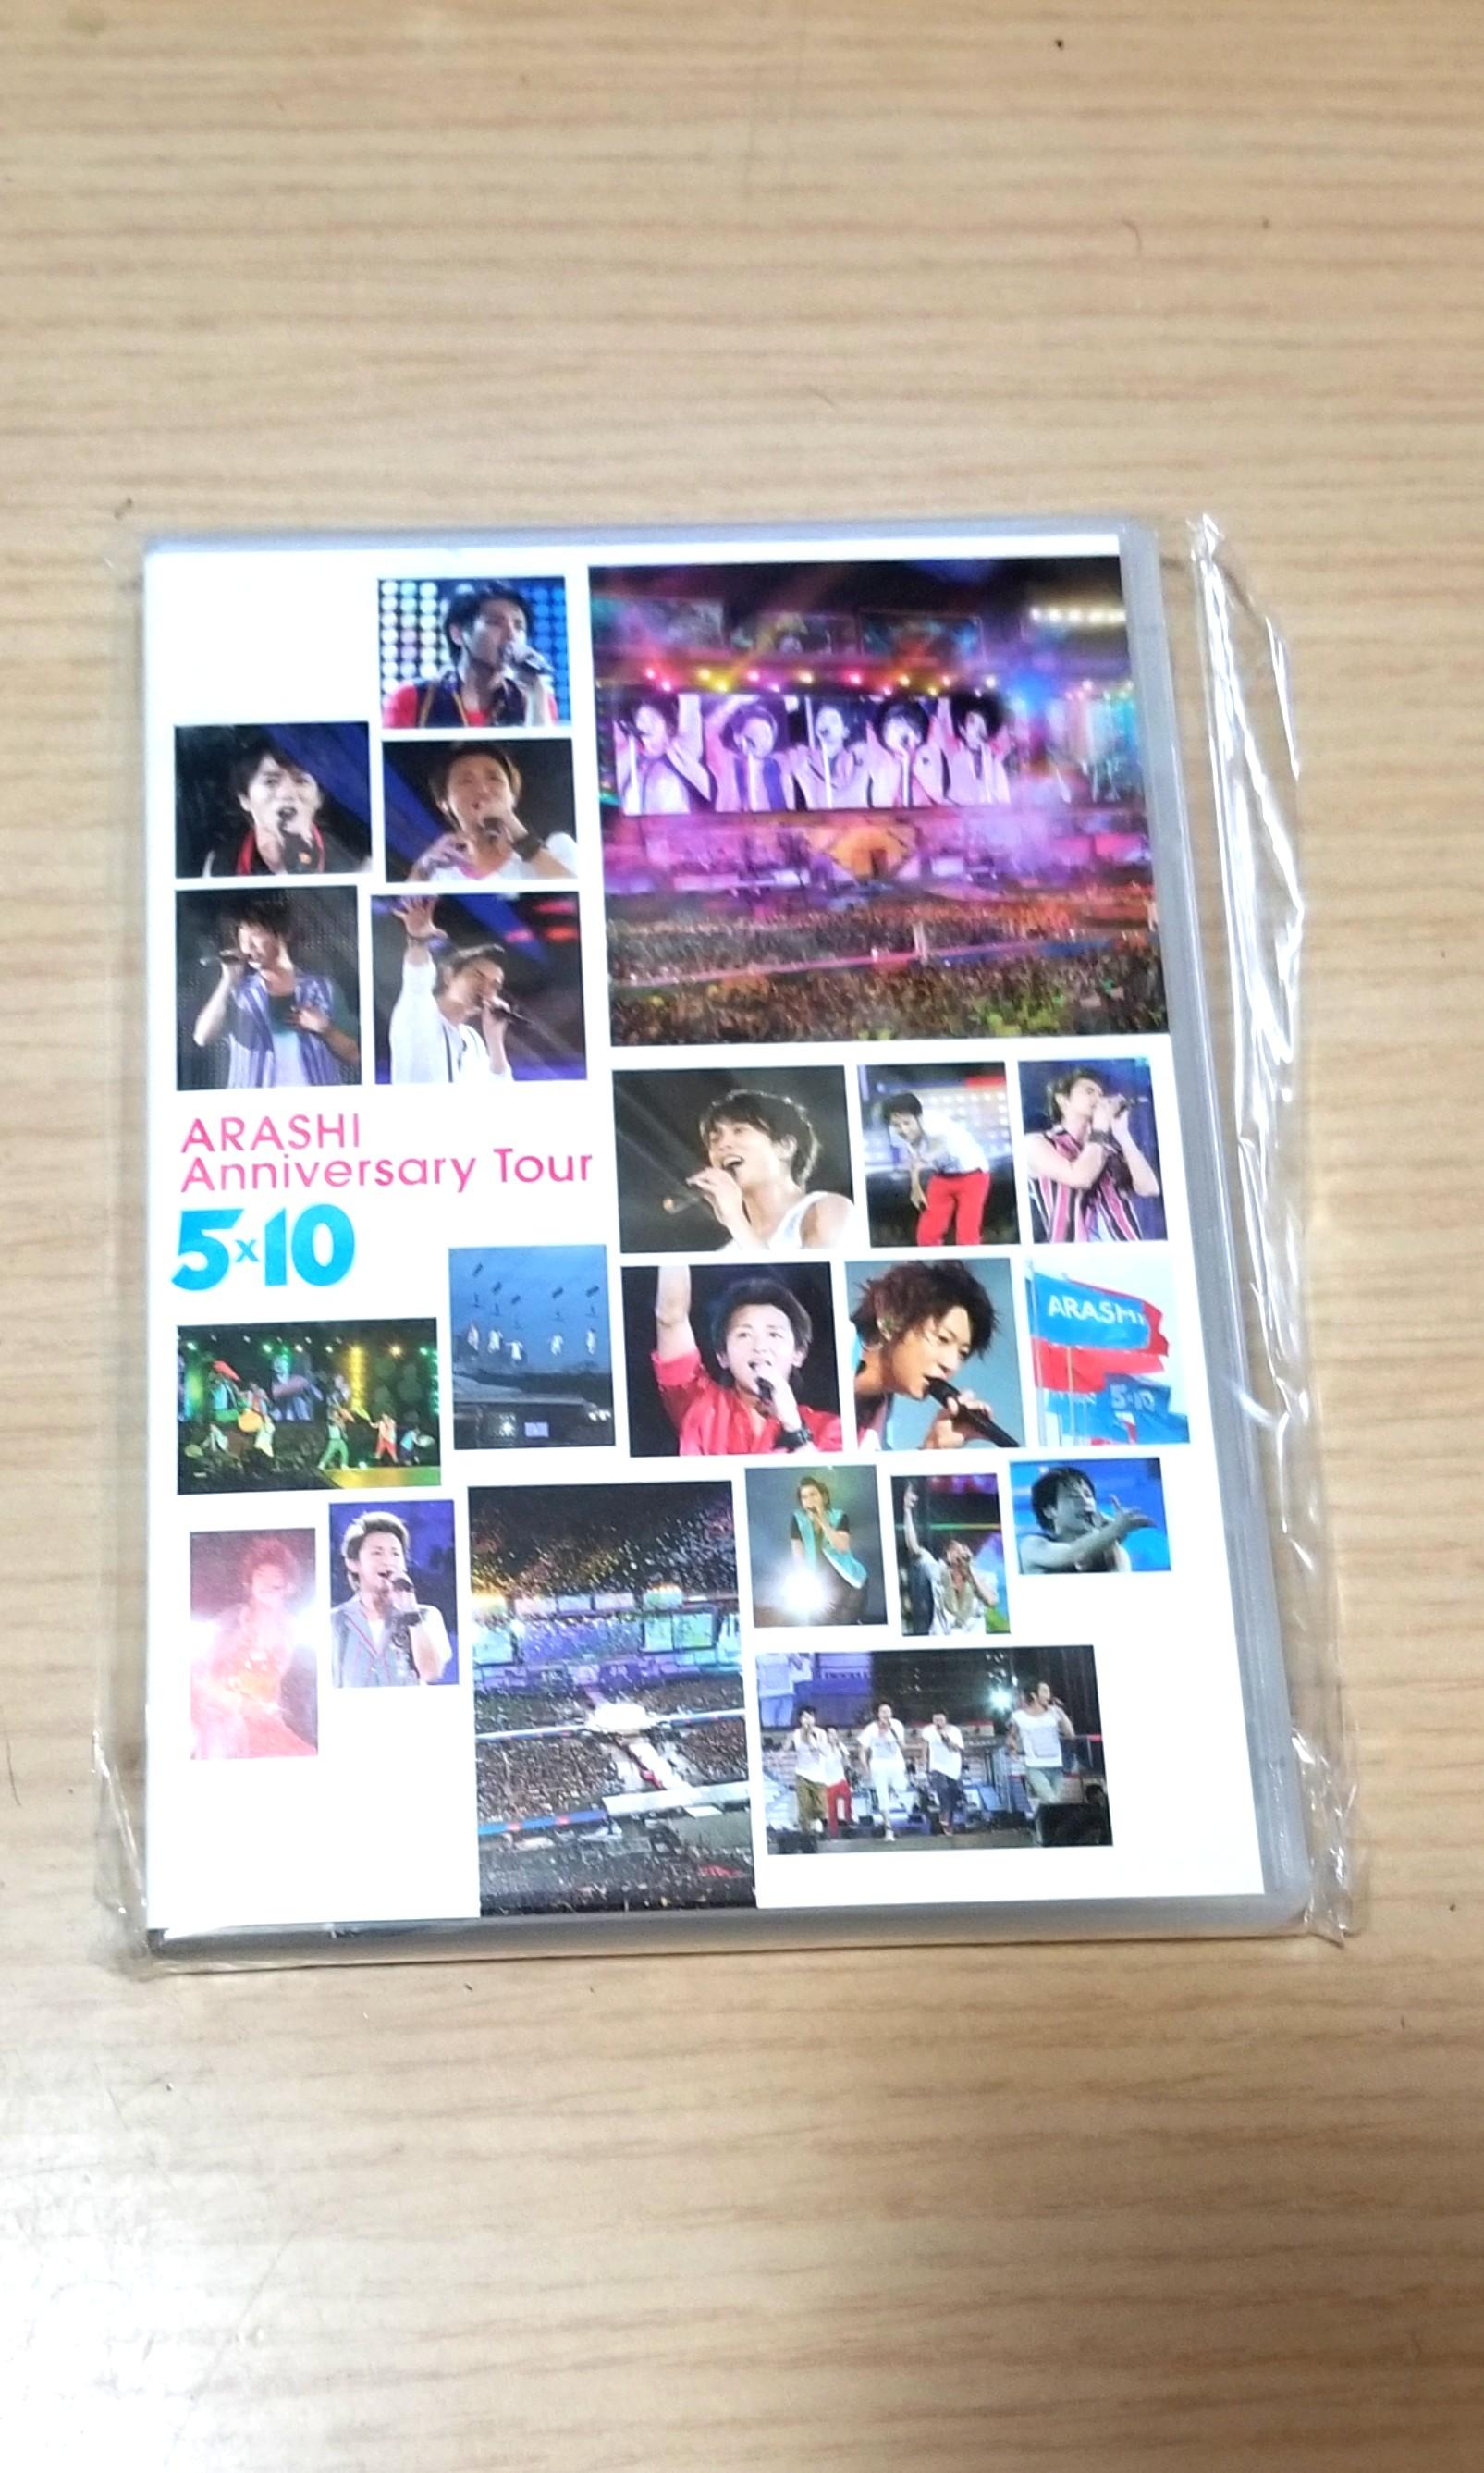 嵐 ARASHI Anniversary Tour 5×10〈2枚組〉 - ミュージック